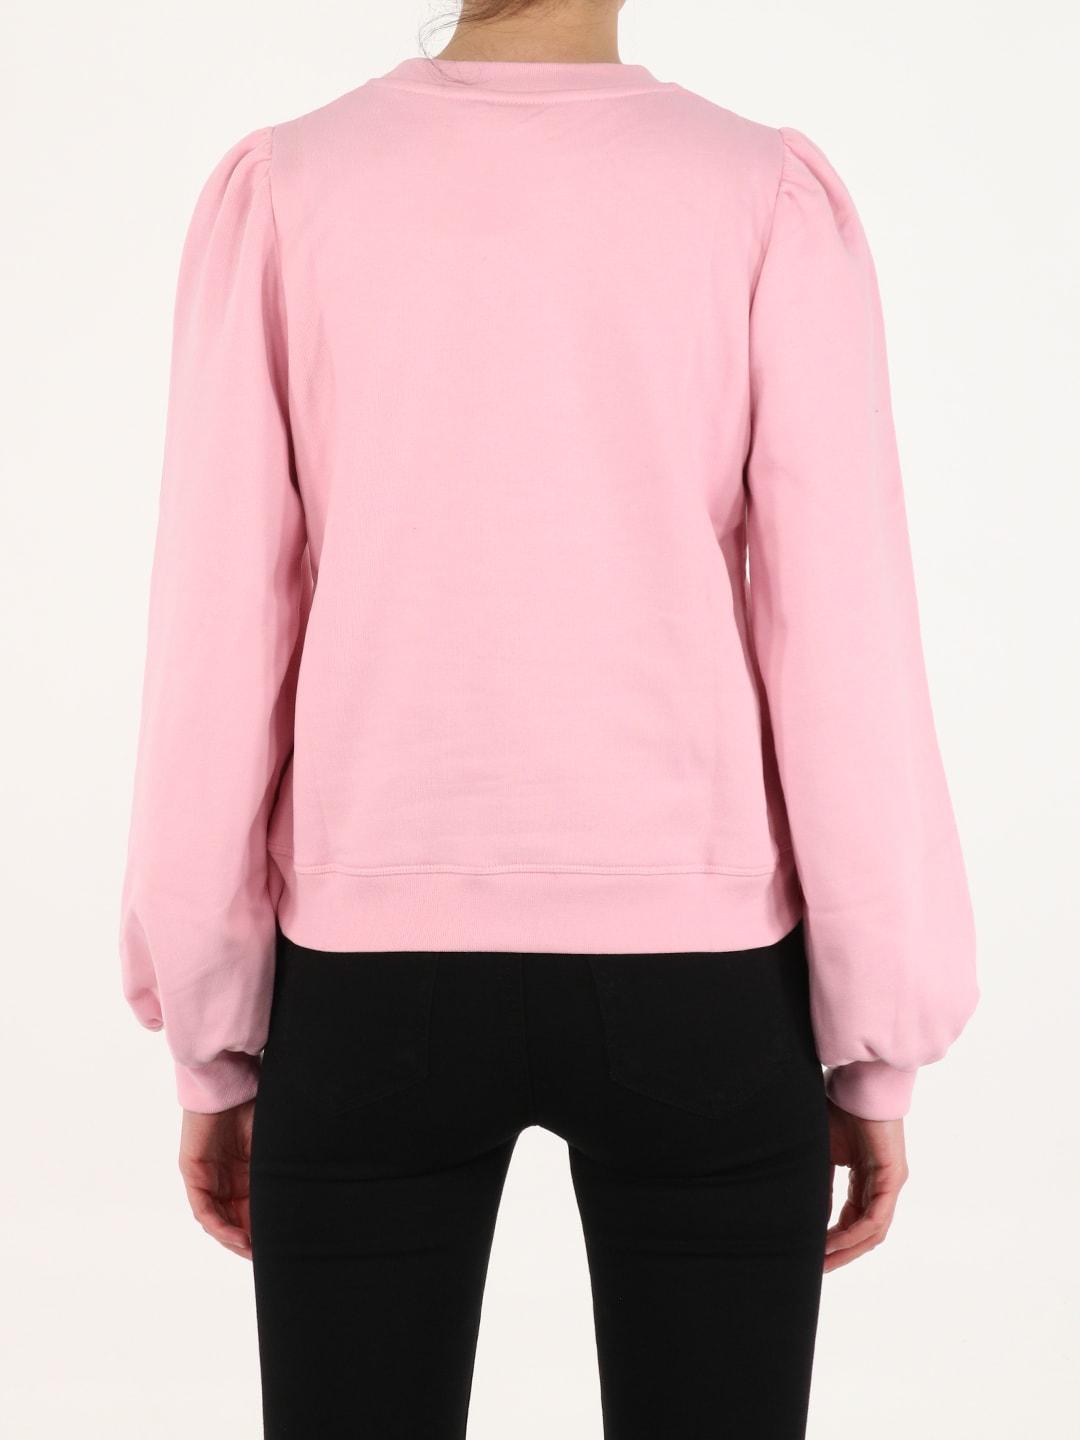 Ganni Cotton Software Isoli Pink Sweatshirt - Save 24% | Lyst